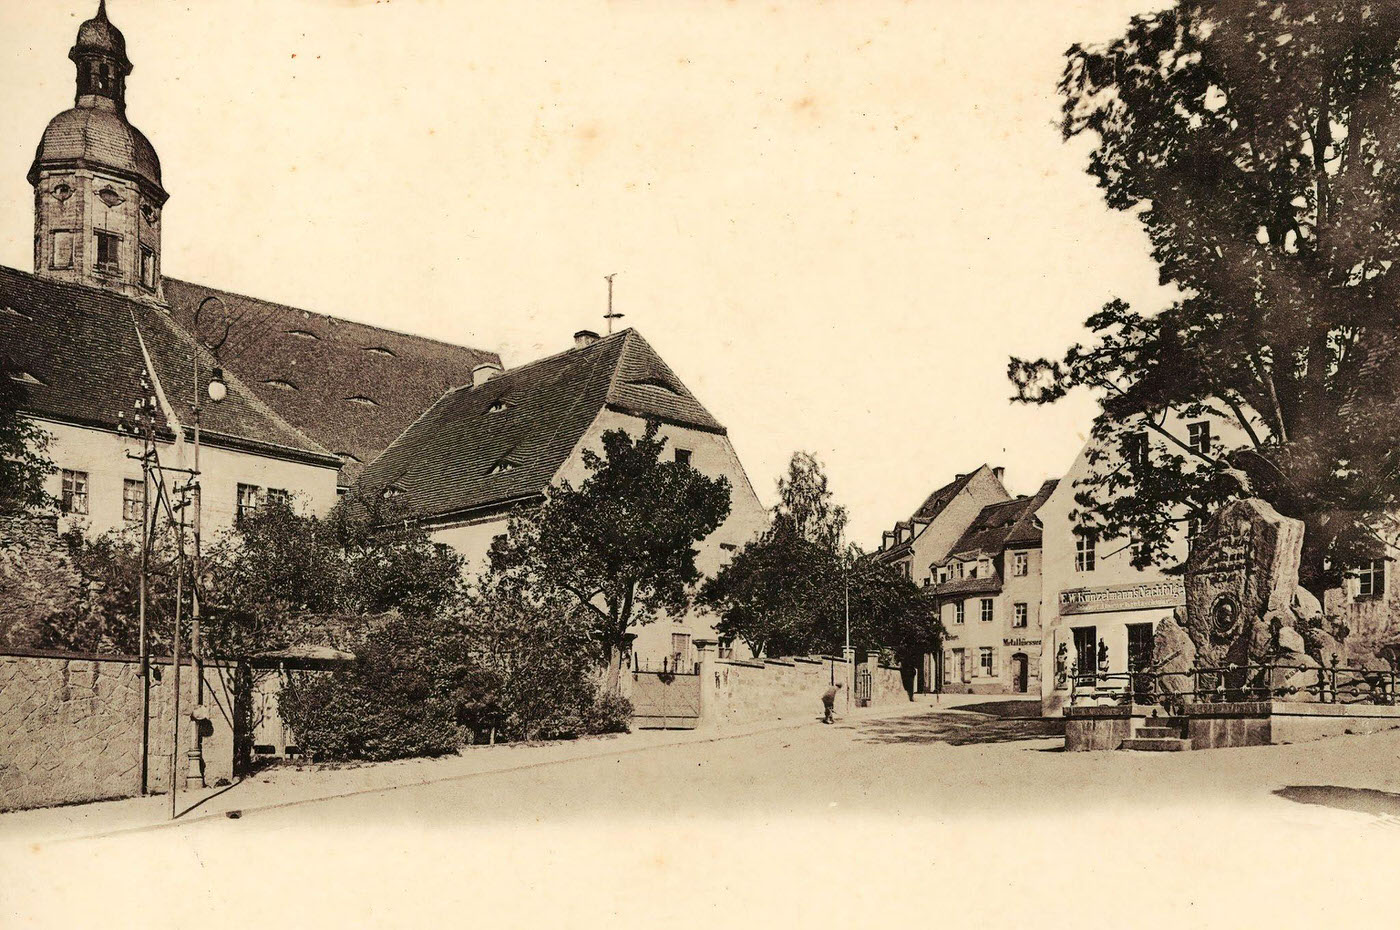 Churches in Dippoldiswalde, Monuments to Otto von Bismarck, 1899.